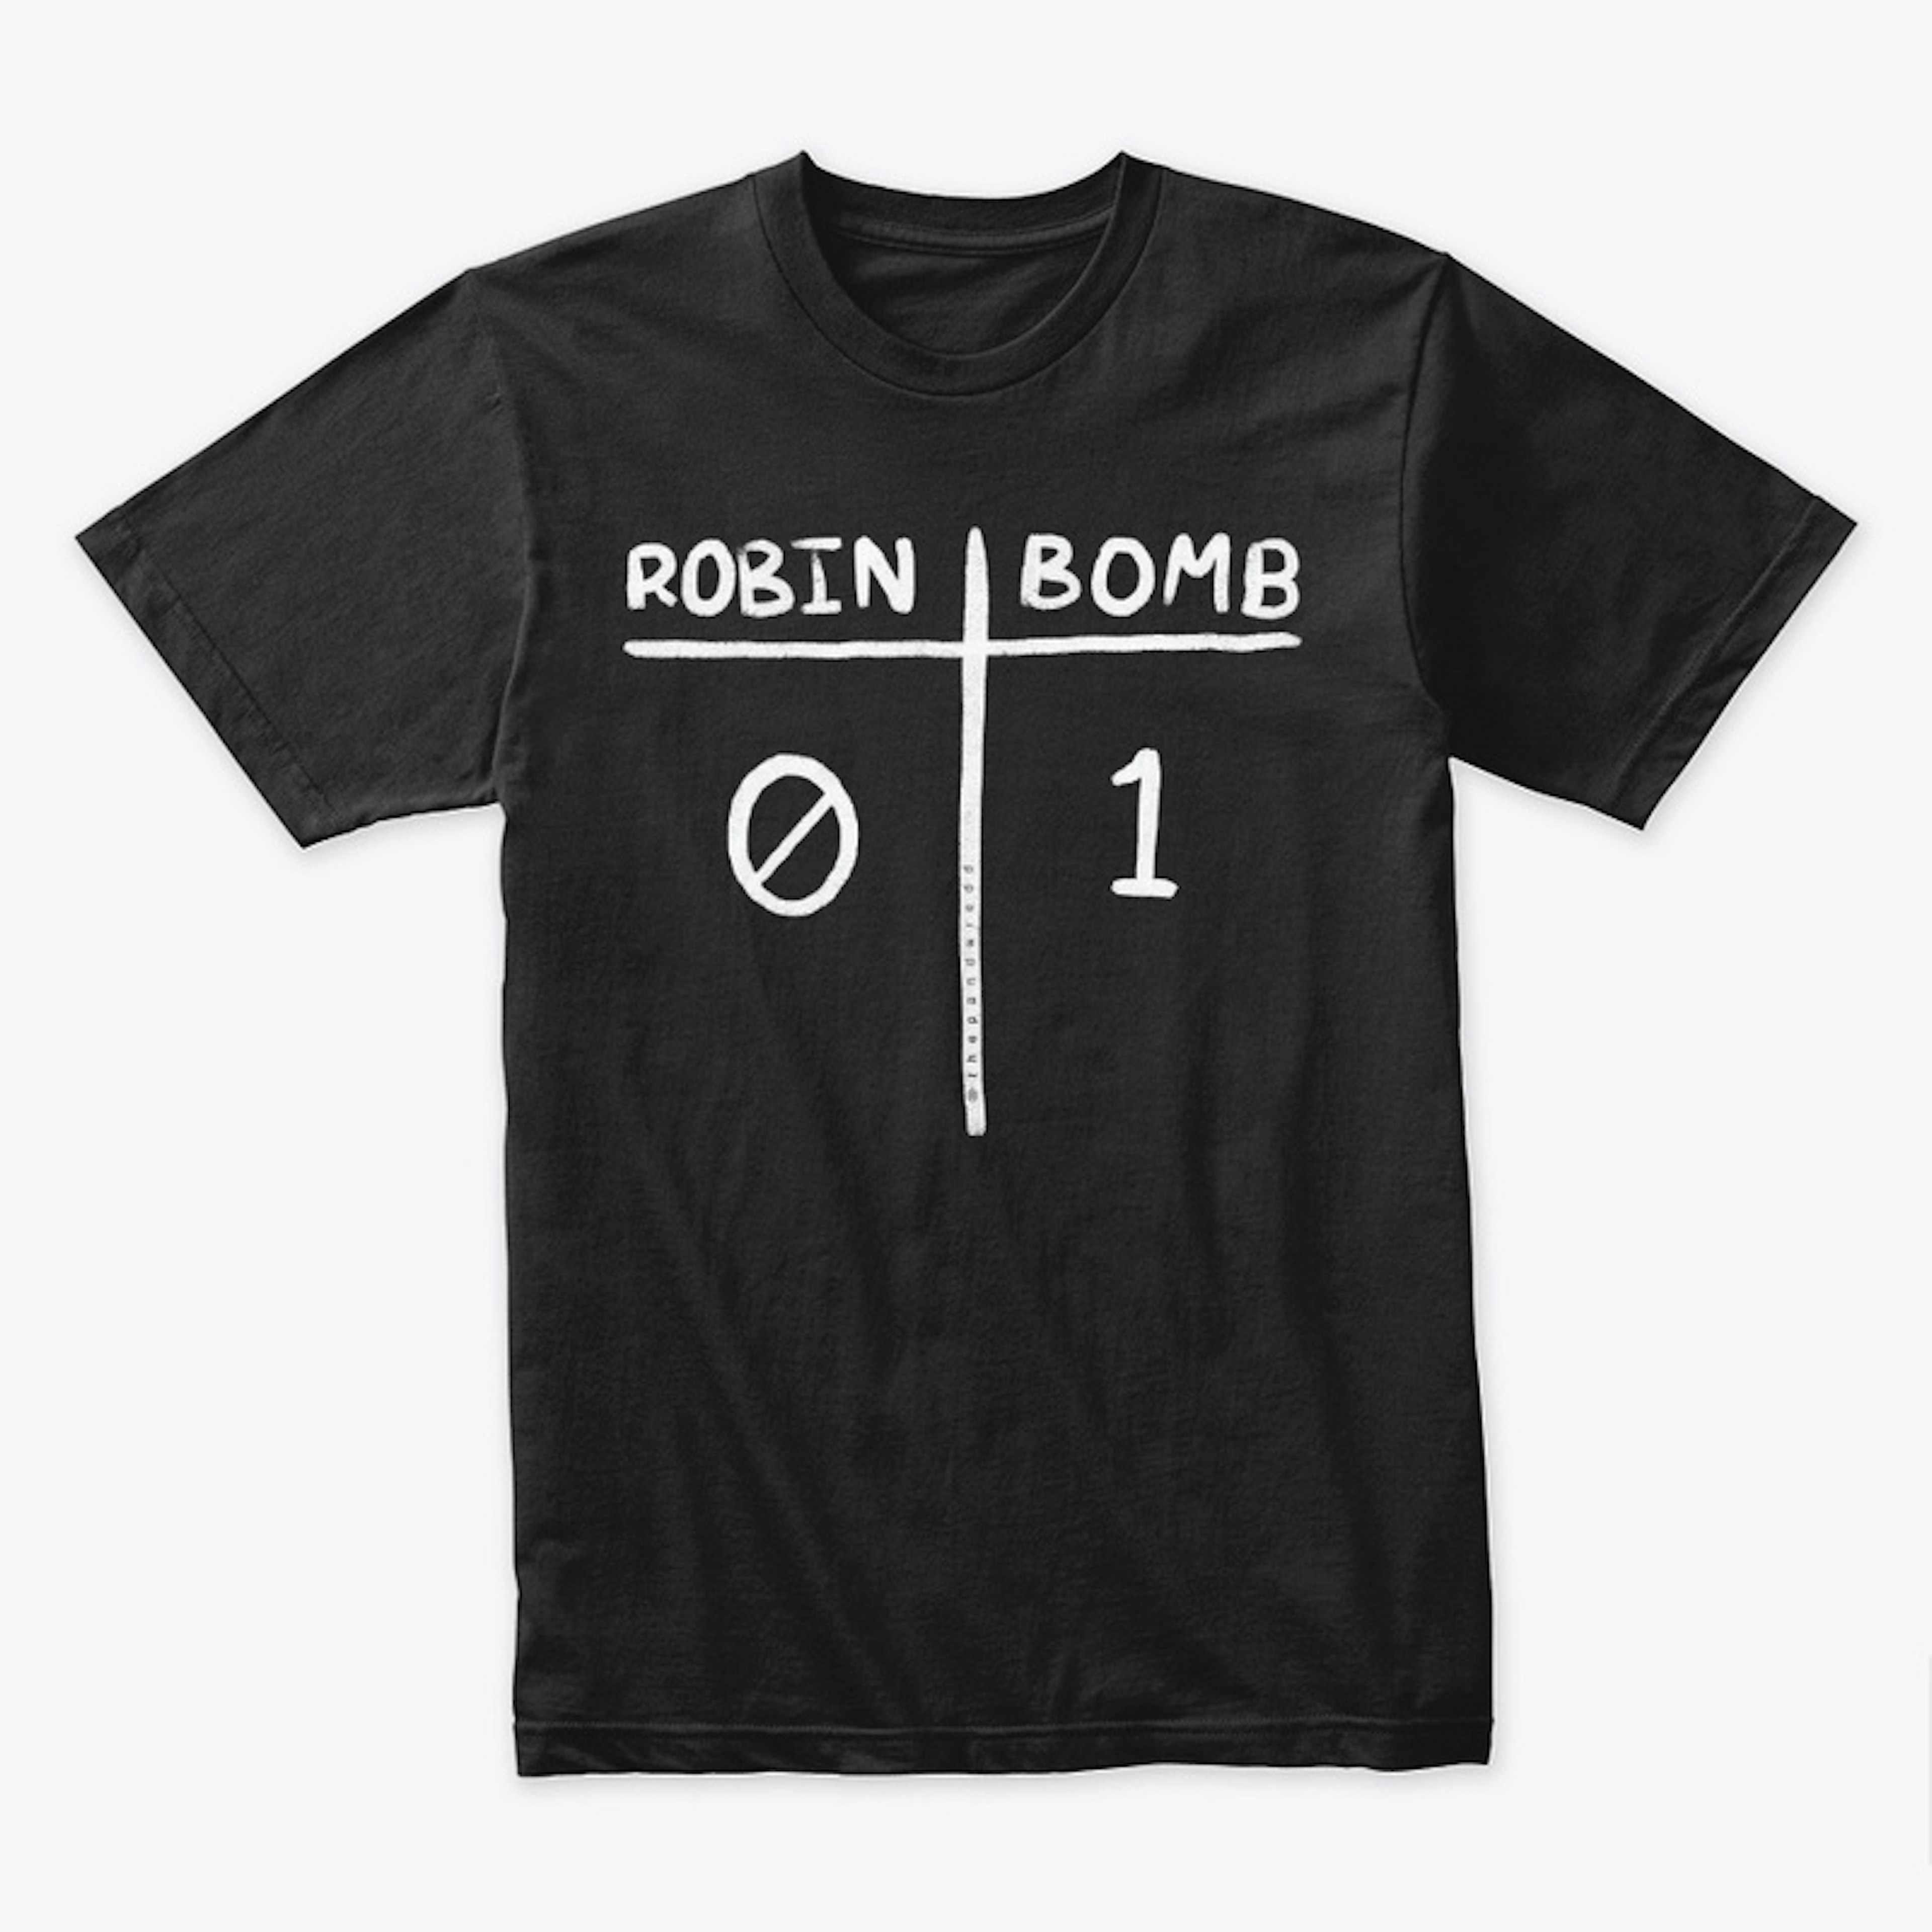 Robin 0, Bomb 1